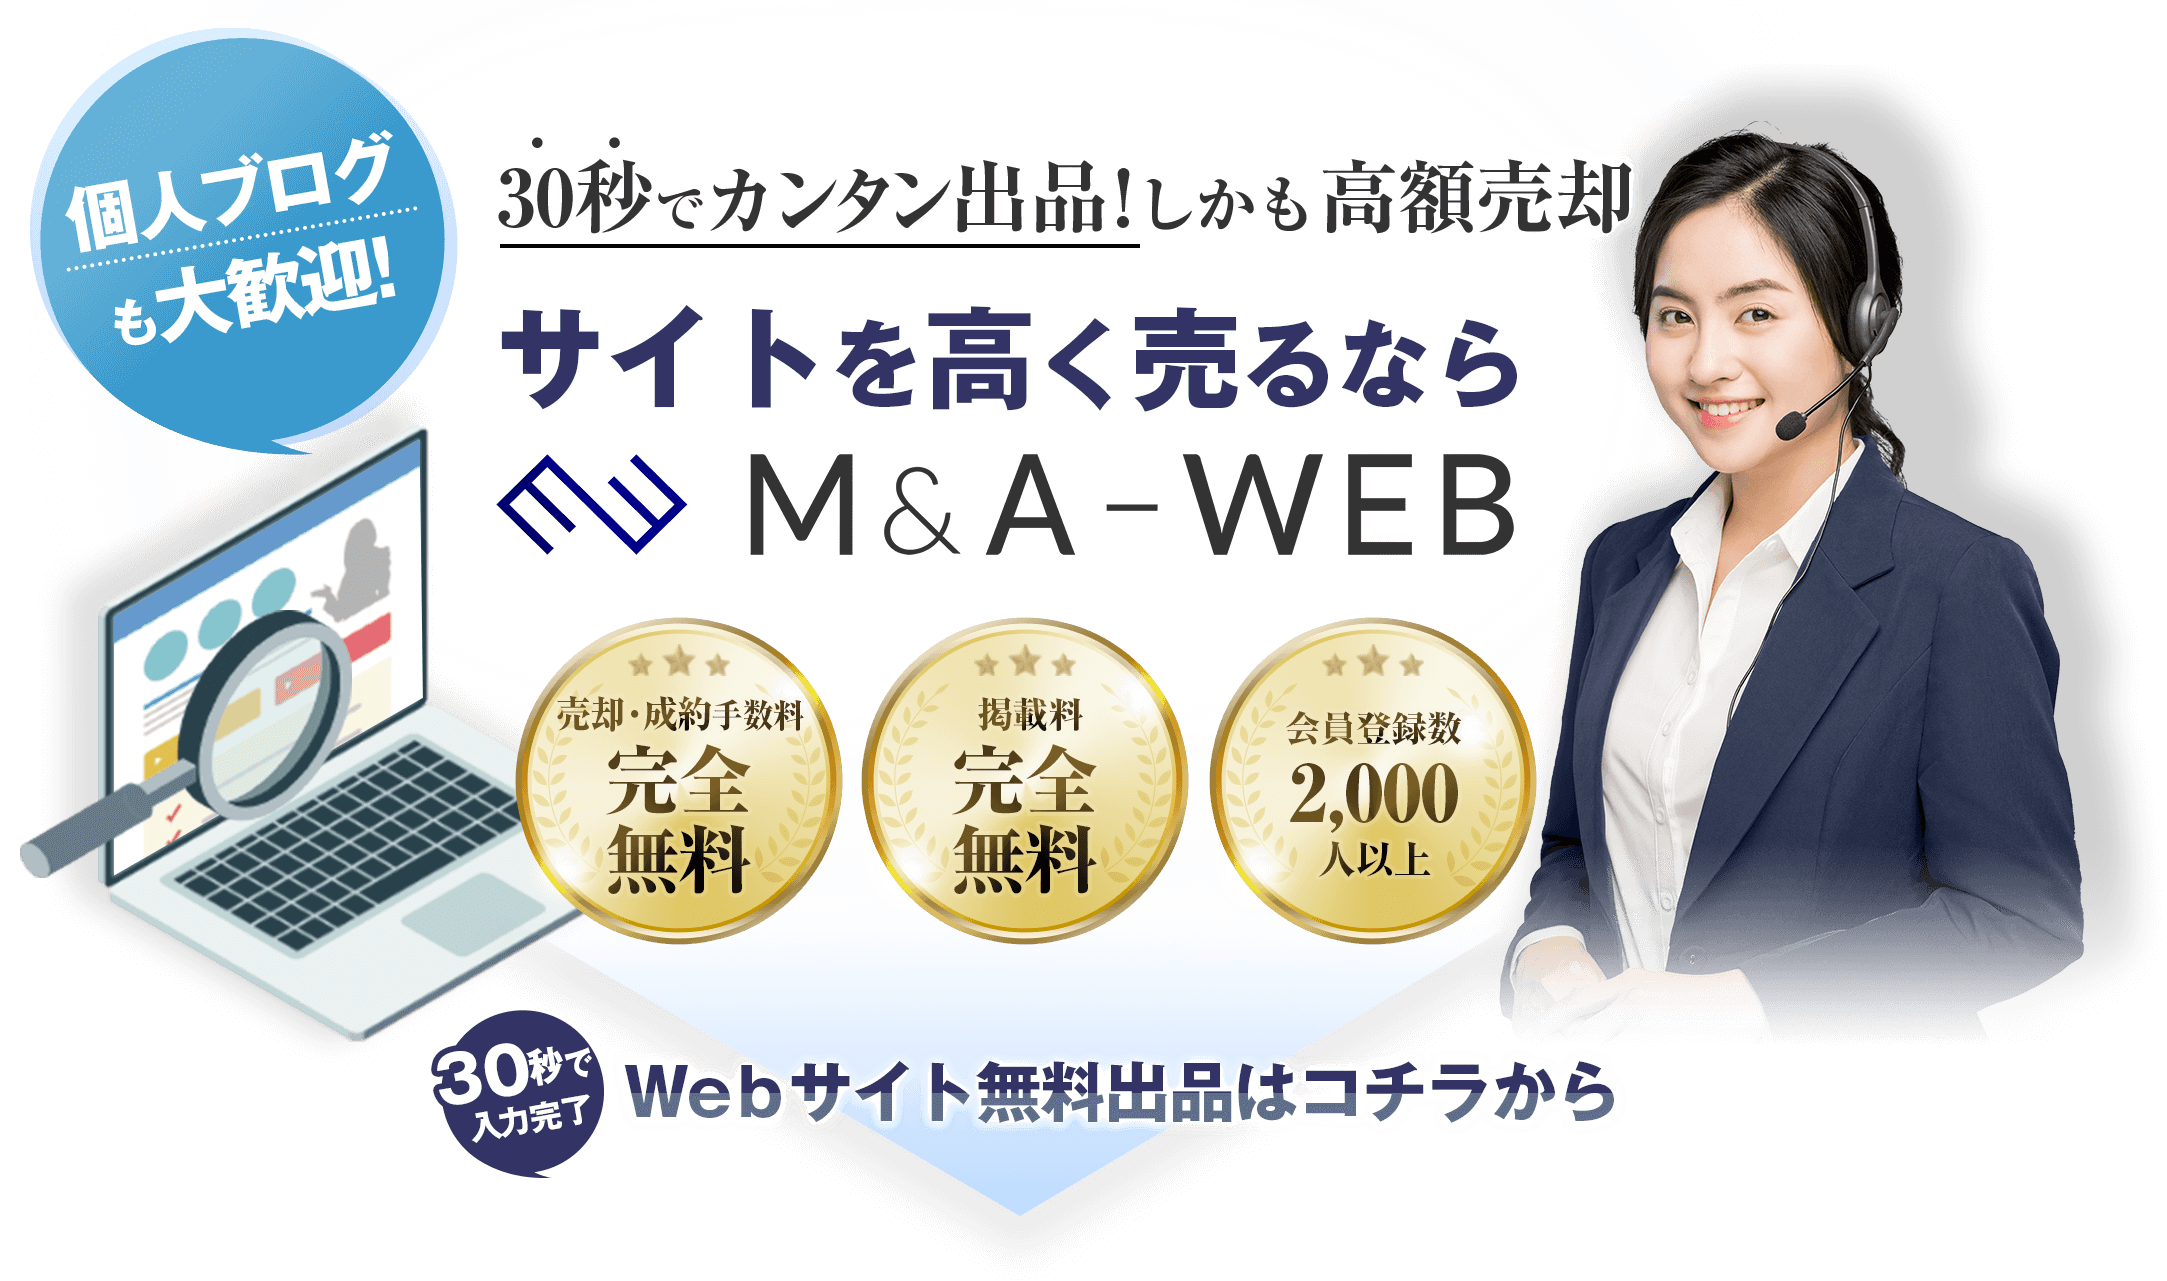 M&A-WEBなら高額査定が可能！経験豊富なプロによるWebサイト査定